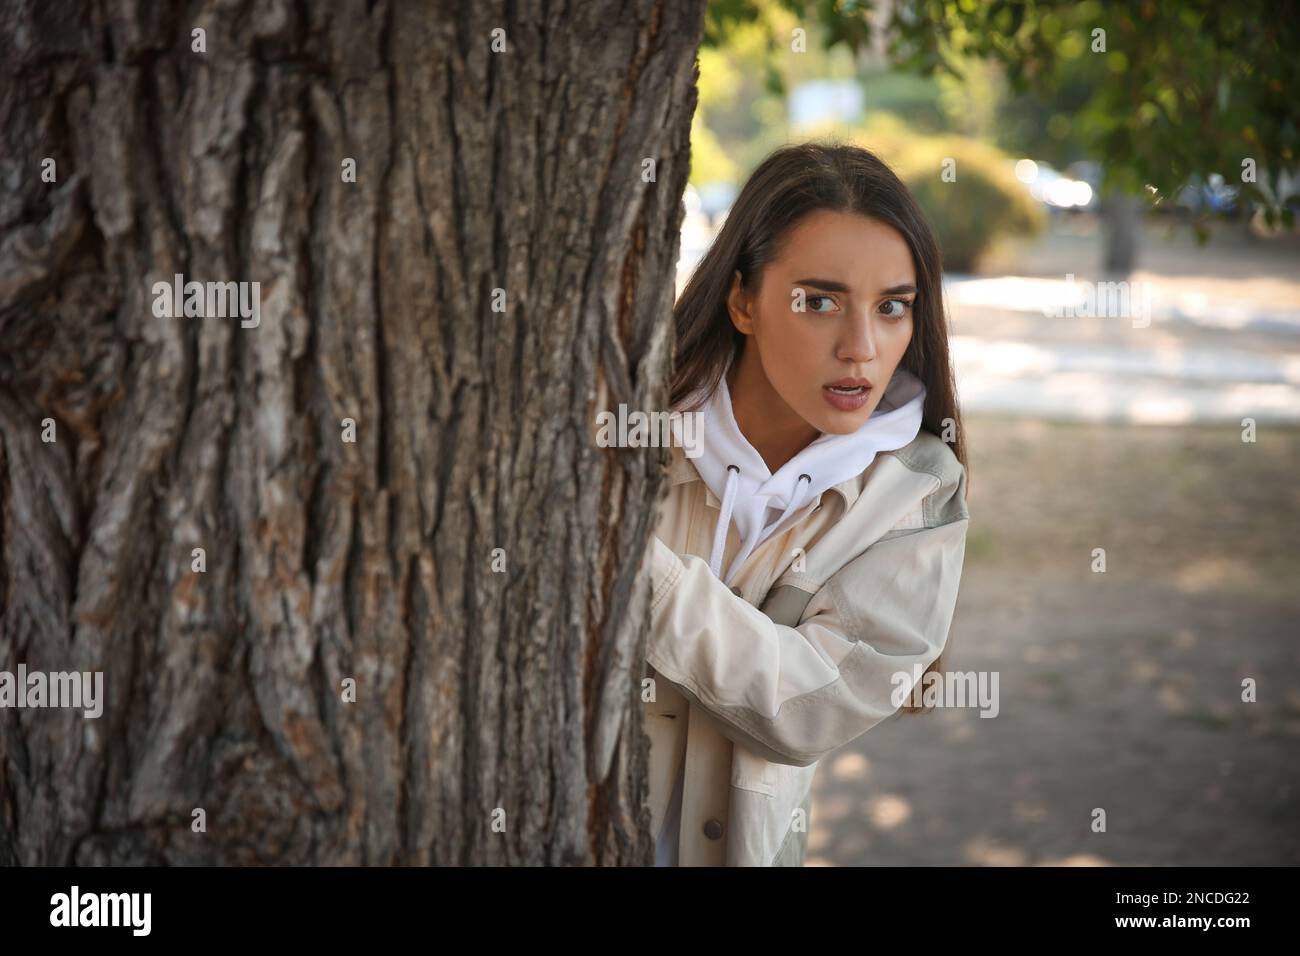 Jealous woman spying on ex boyfriend in park Stock Photo